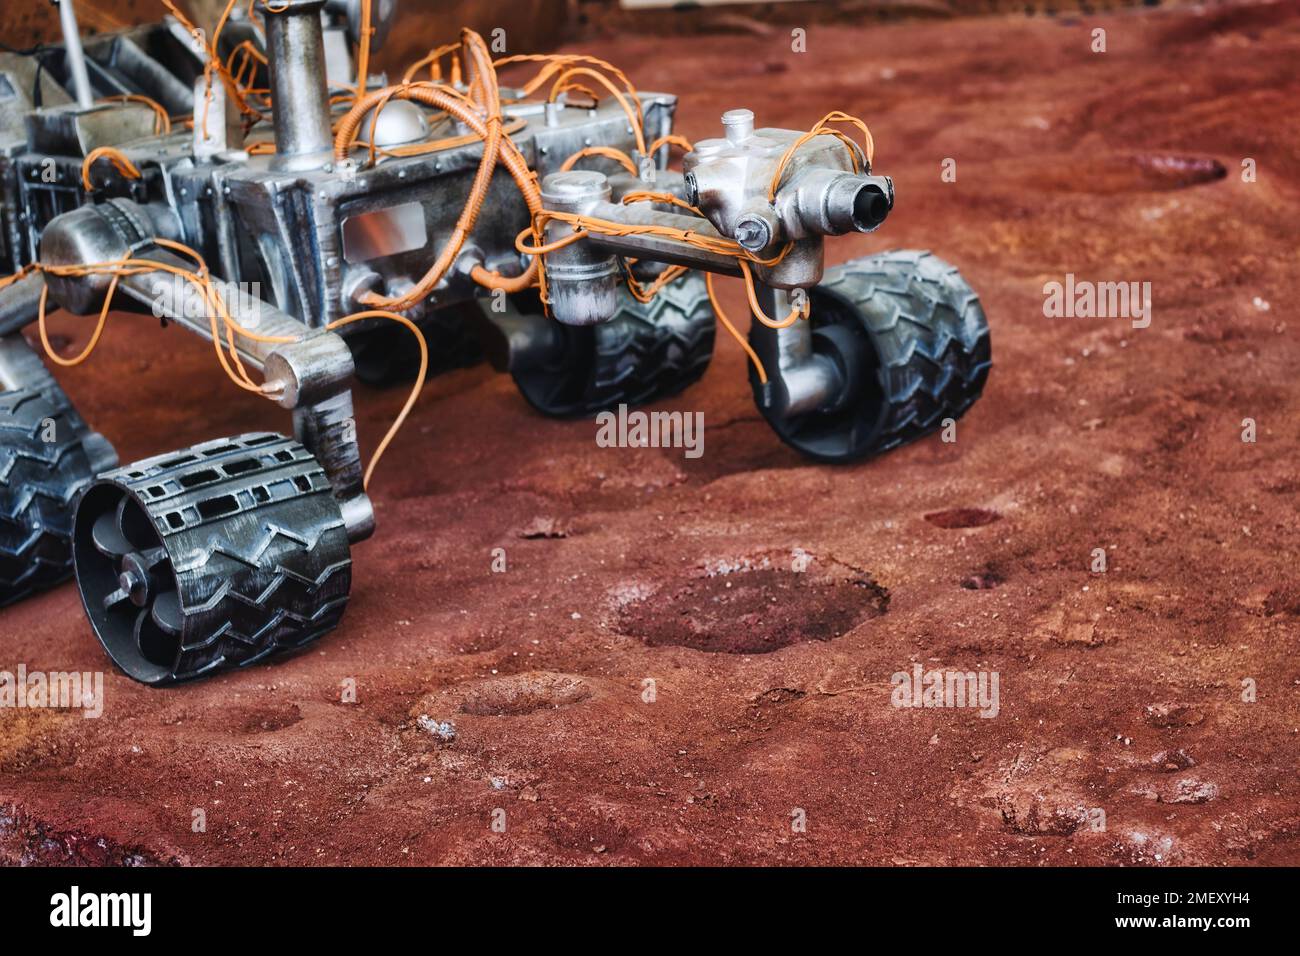 Primer plano del vehículo de exploración Mars rover en la superficie del planeta rojo Foto de stock